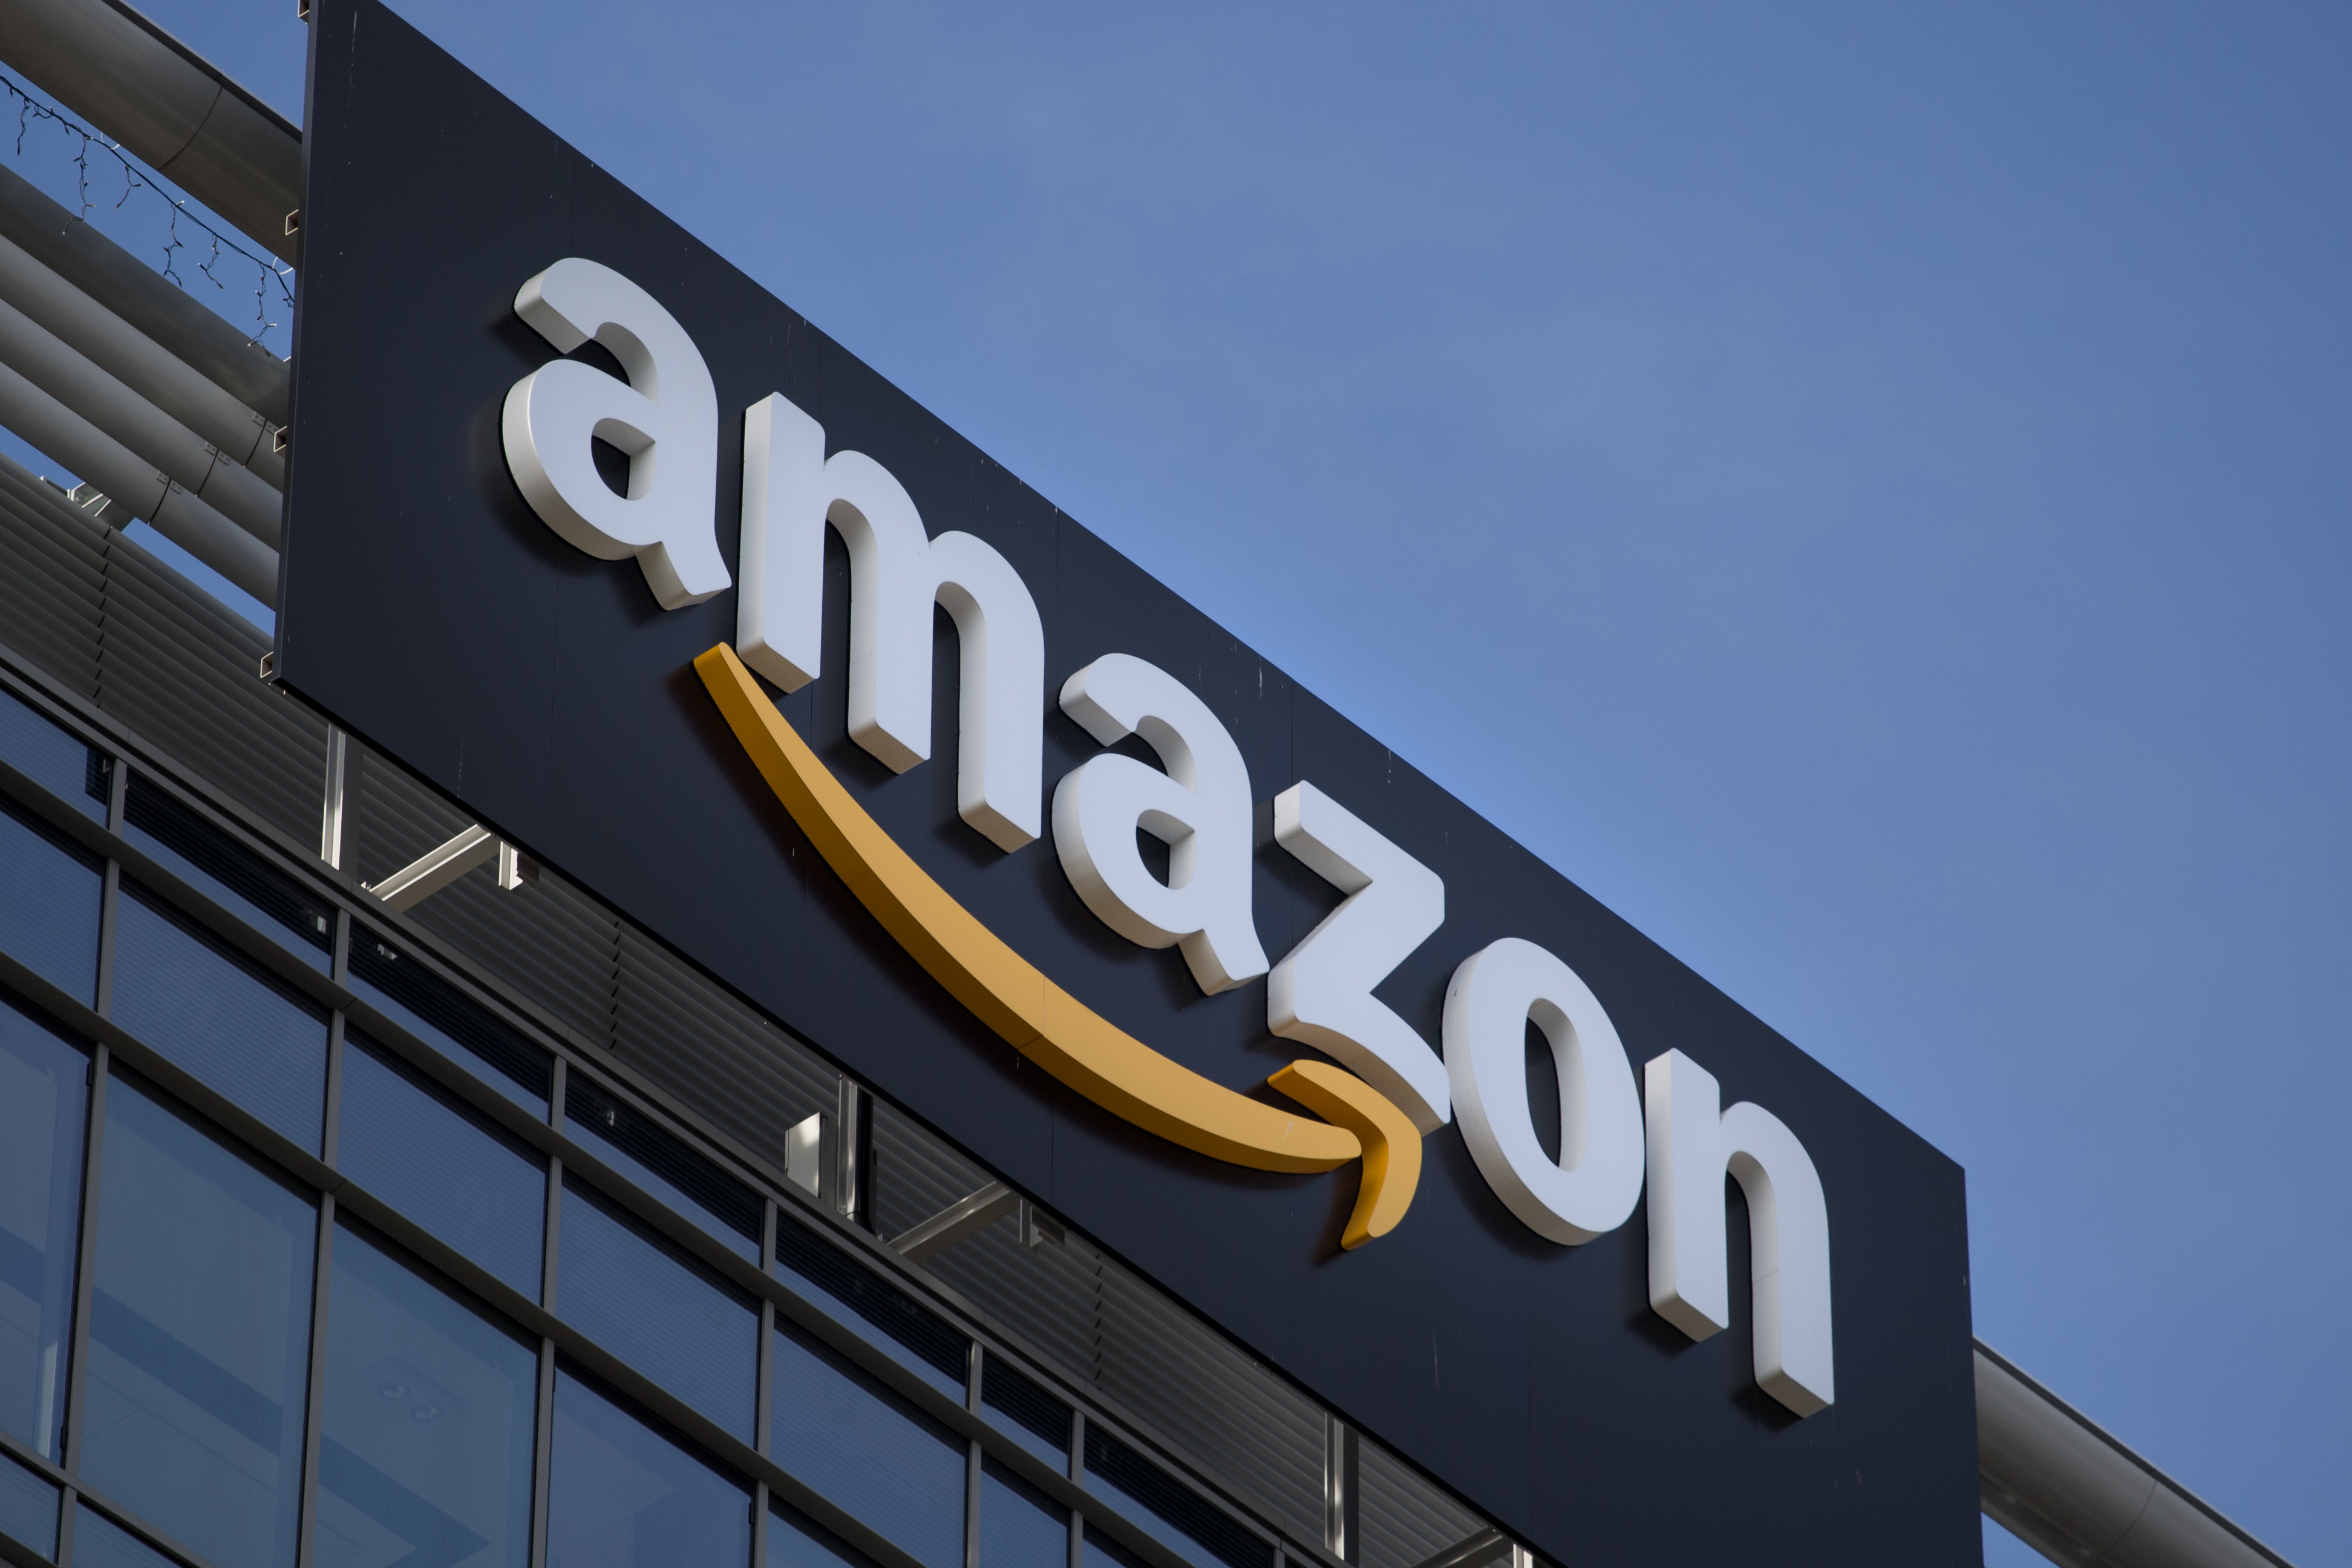 Online retail giant - Amazon